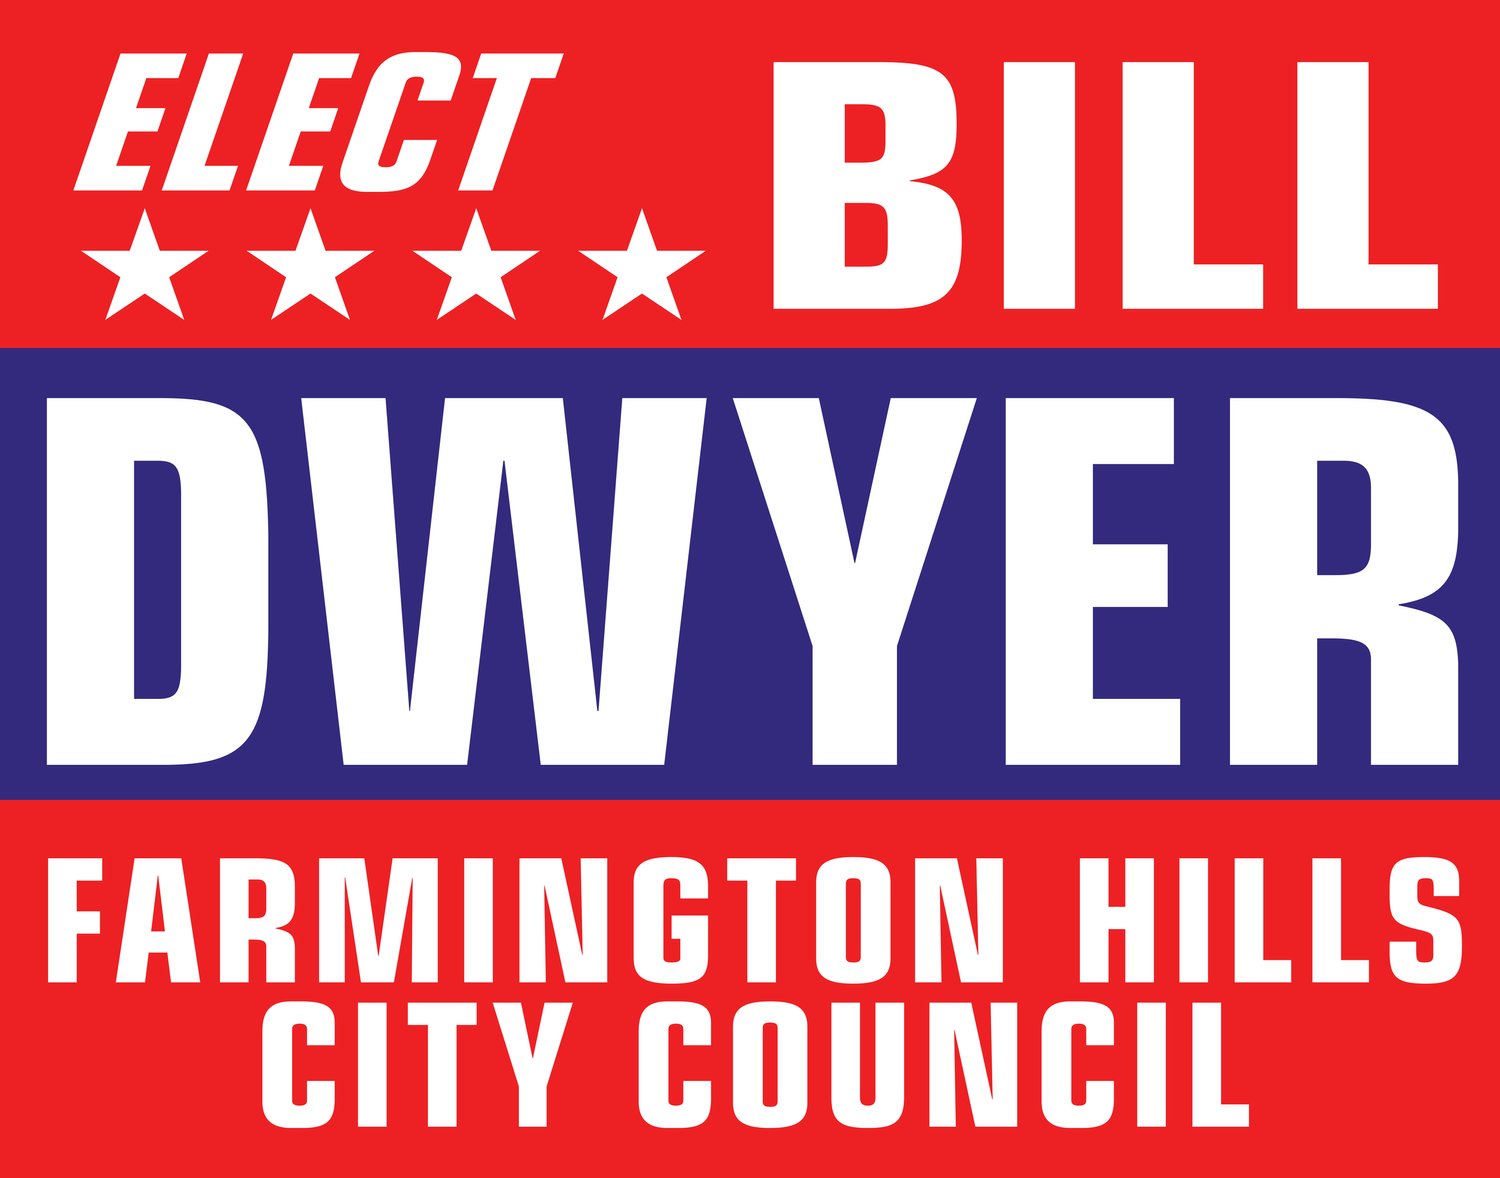 Bill Dwyer for Farmington Hills